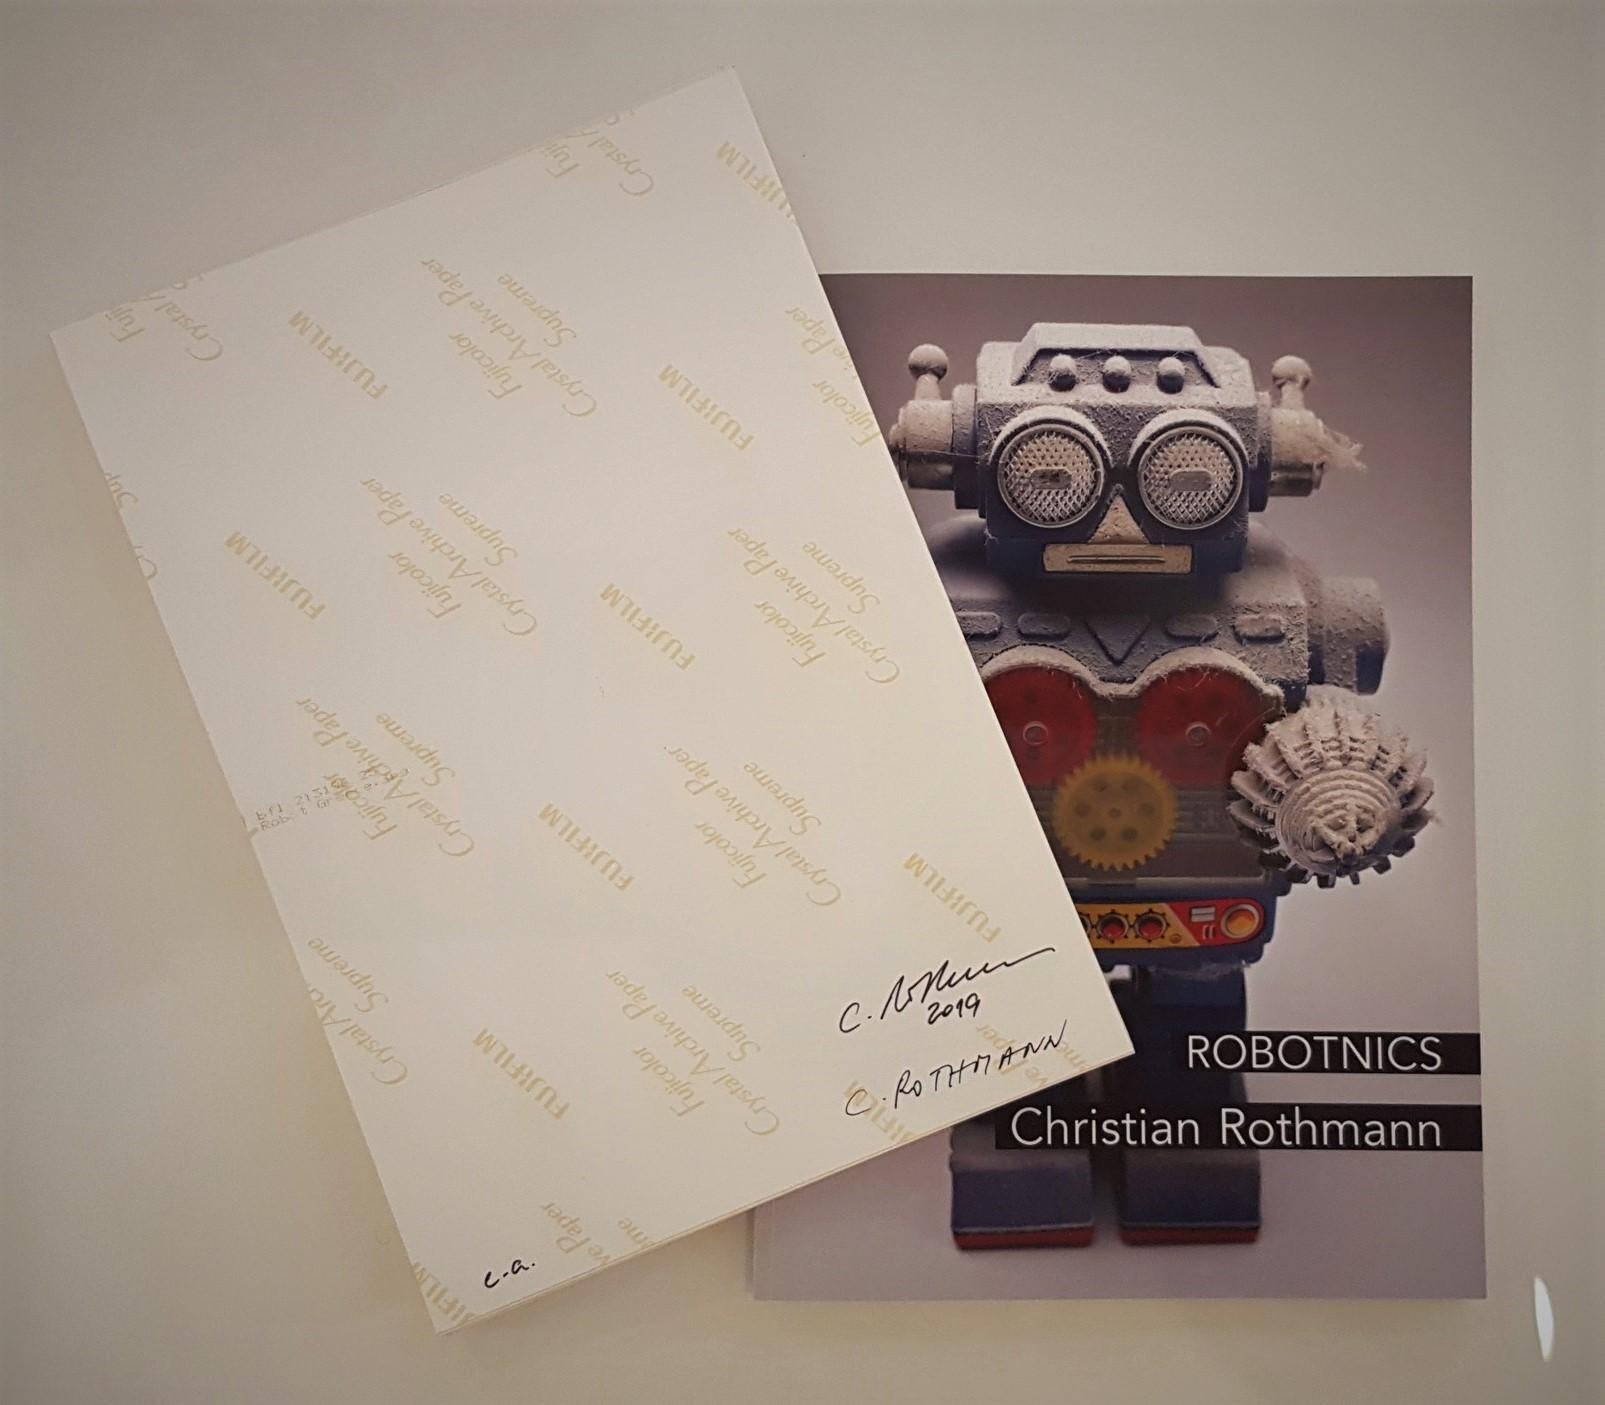 Christian Rothmann
ROBOTNICS-Reihe
C-Print
2019
Ausgabe S (10er Auflage)
12 x 8,3 Zoll (30,5 x 21 cm)
Verso signiert, datiert und nummeriert


Andere Auflagengrößen verfügbar:
- Ausgabe M (Ausgabe von 6)  35.4 x 23,6 Zoll (90 x 60 cm)
- Ausgabe L